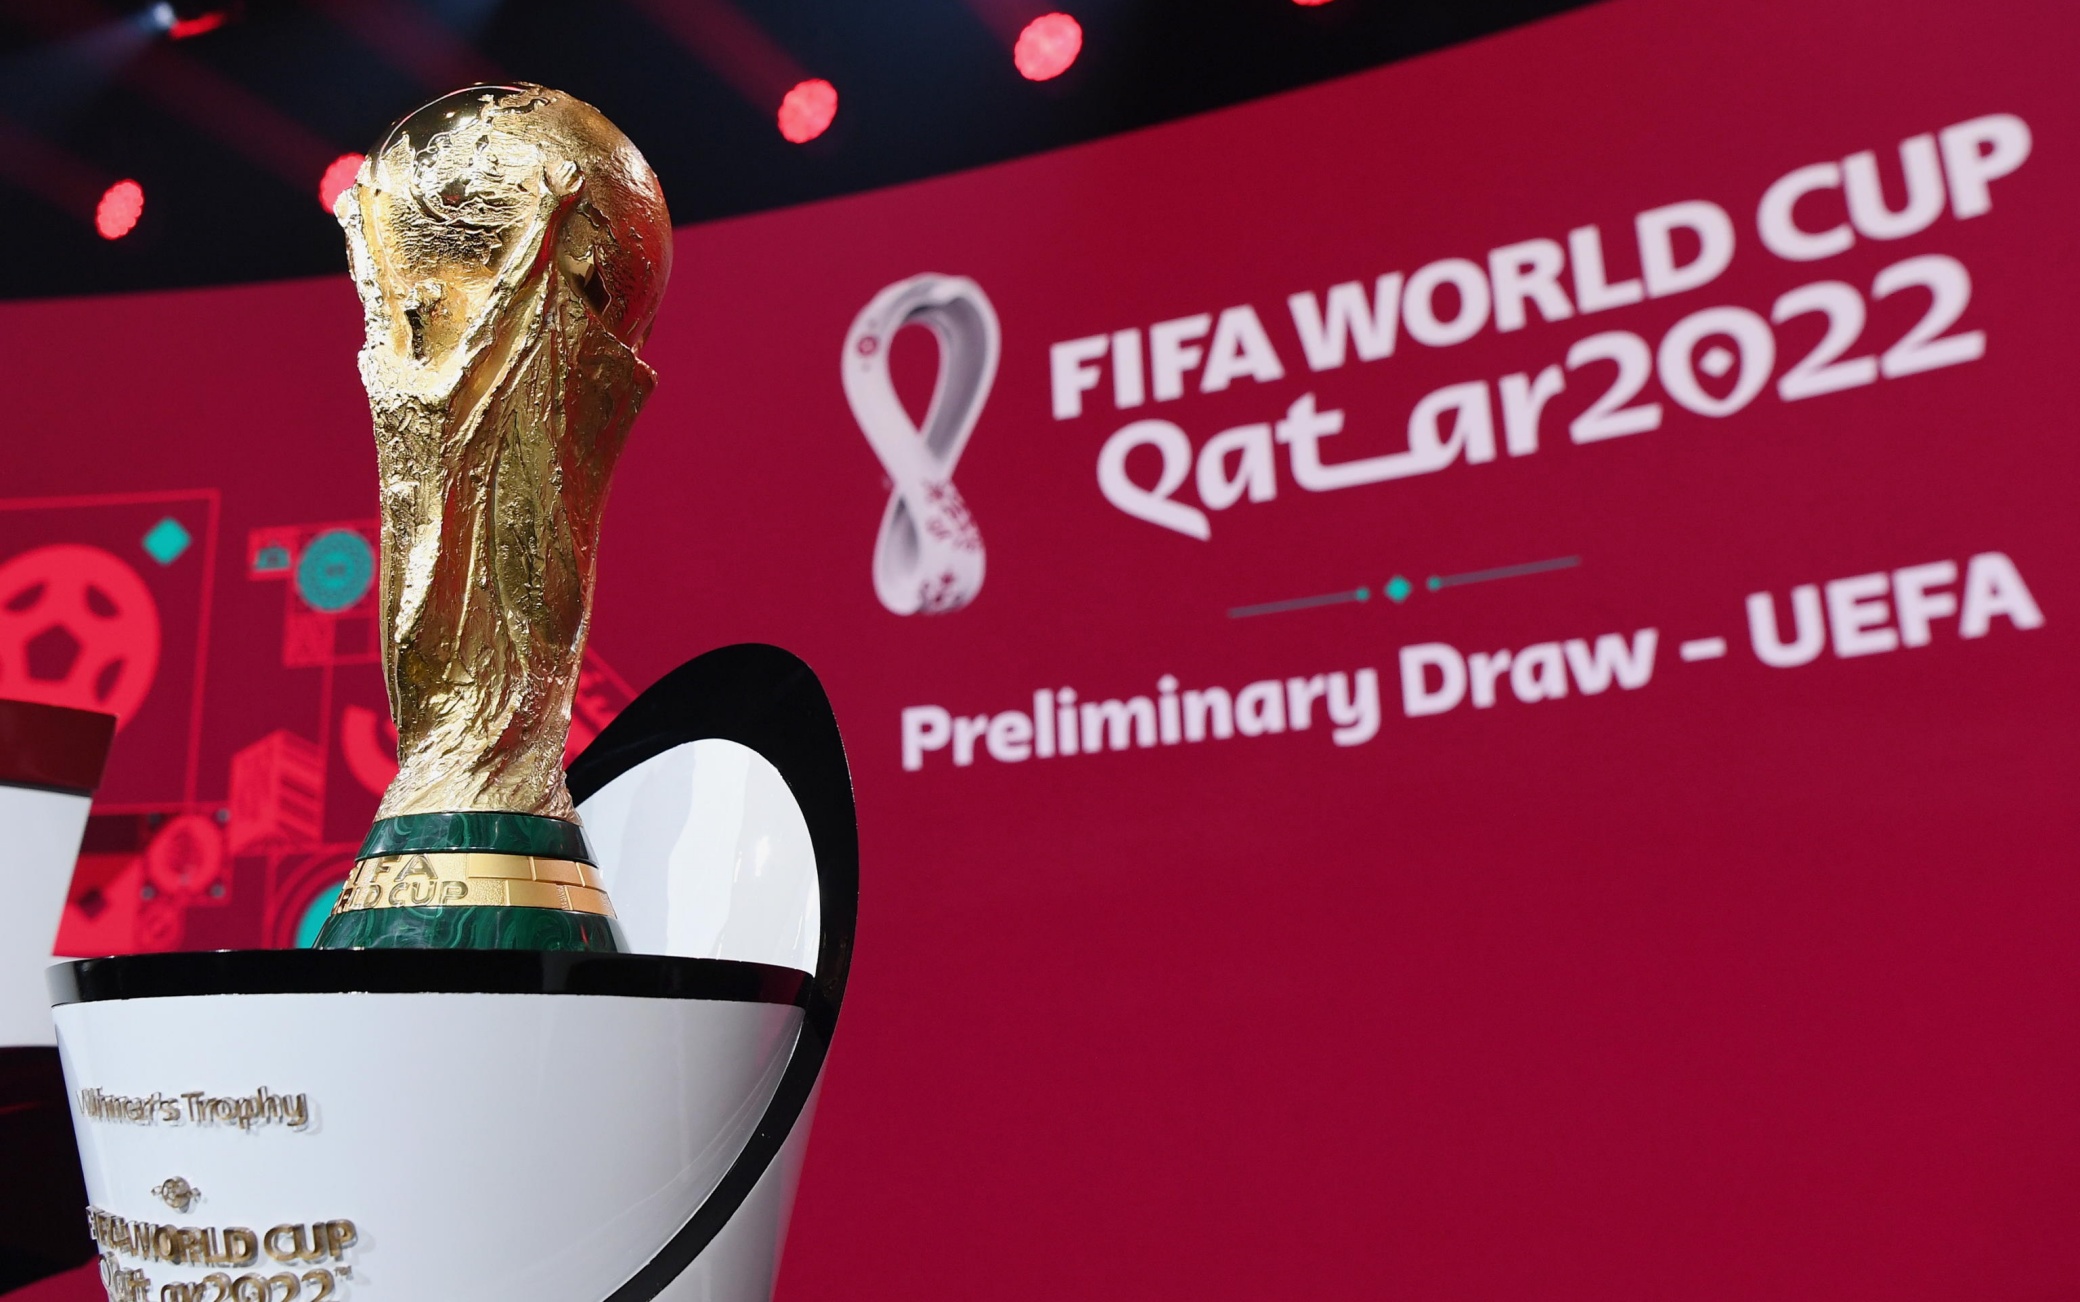 FIFA World Cup Qatar 2022 European qualifying draw